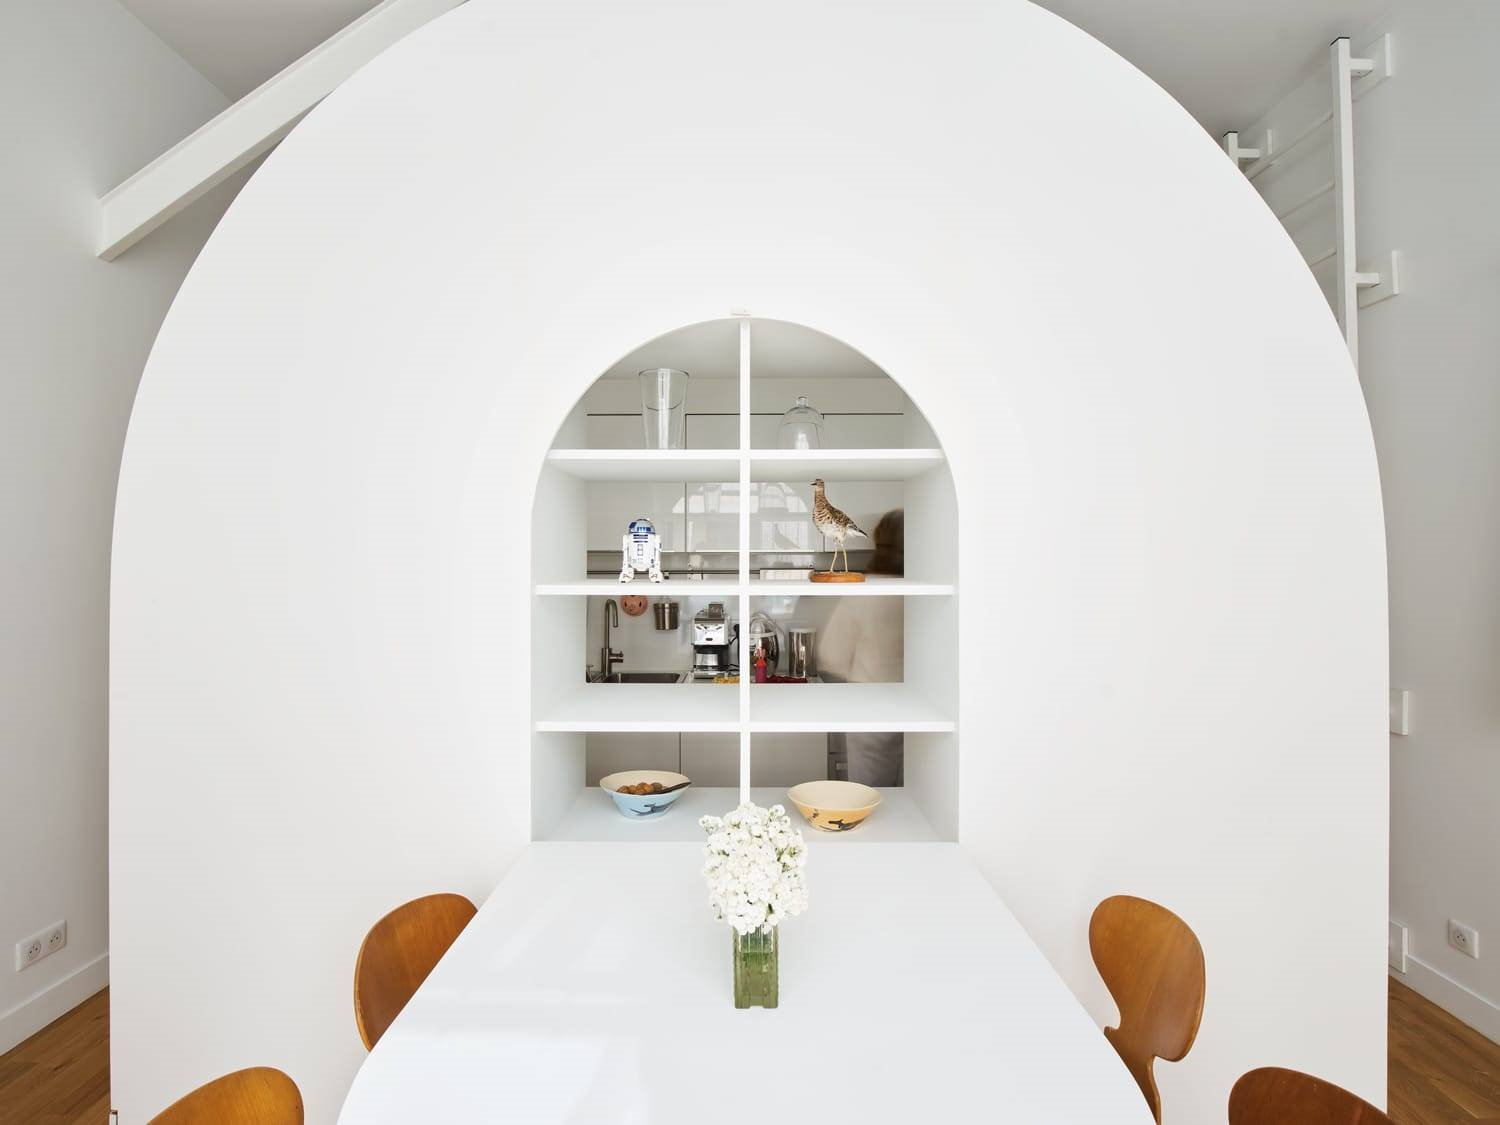 Mueble hecho a medida en forma de arco con mesa plegable y estanteria de color blanco